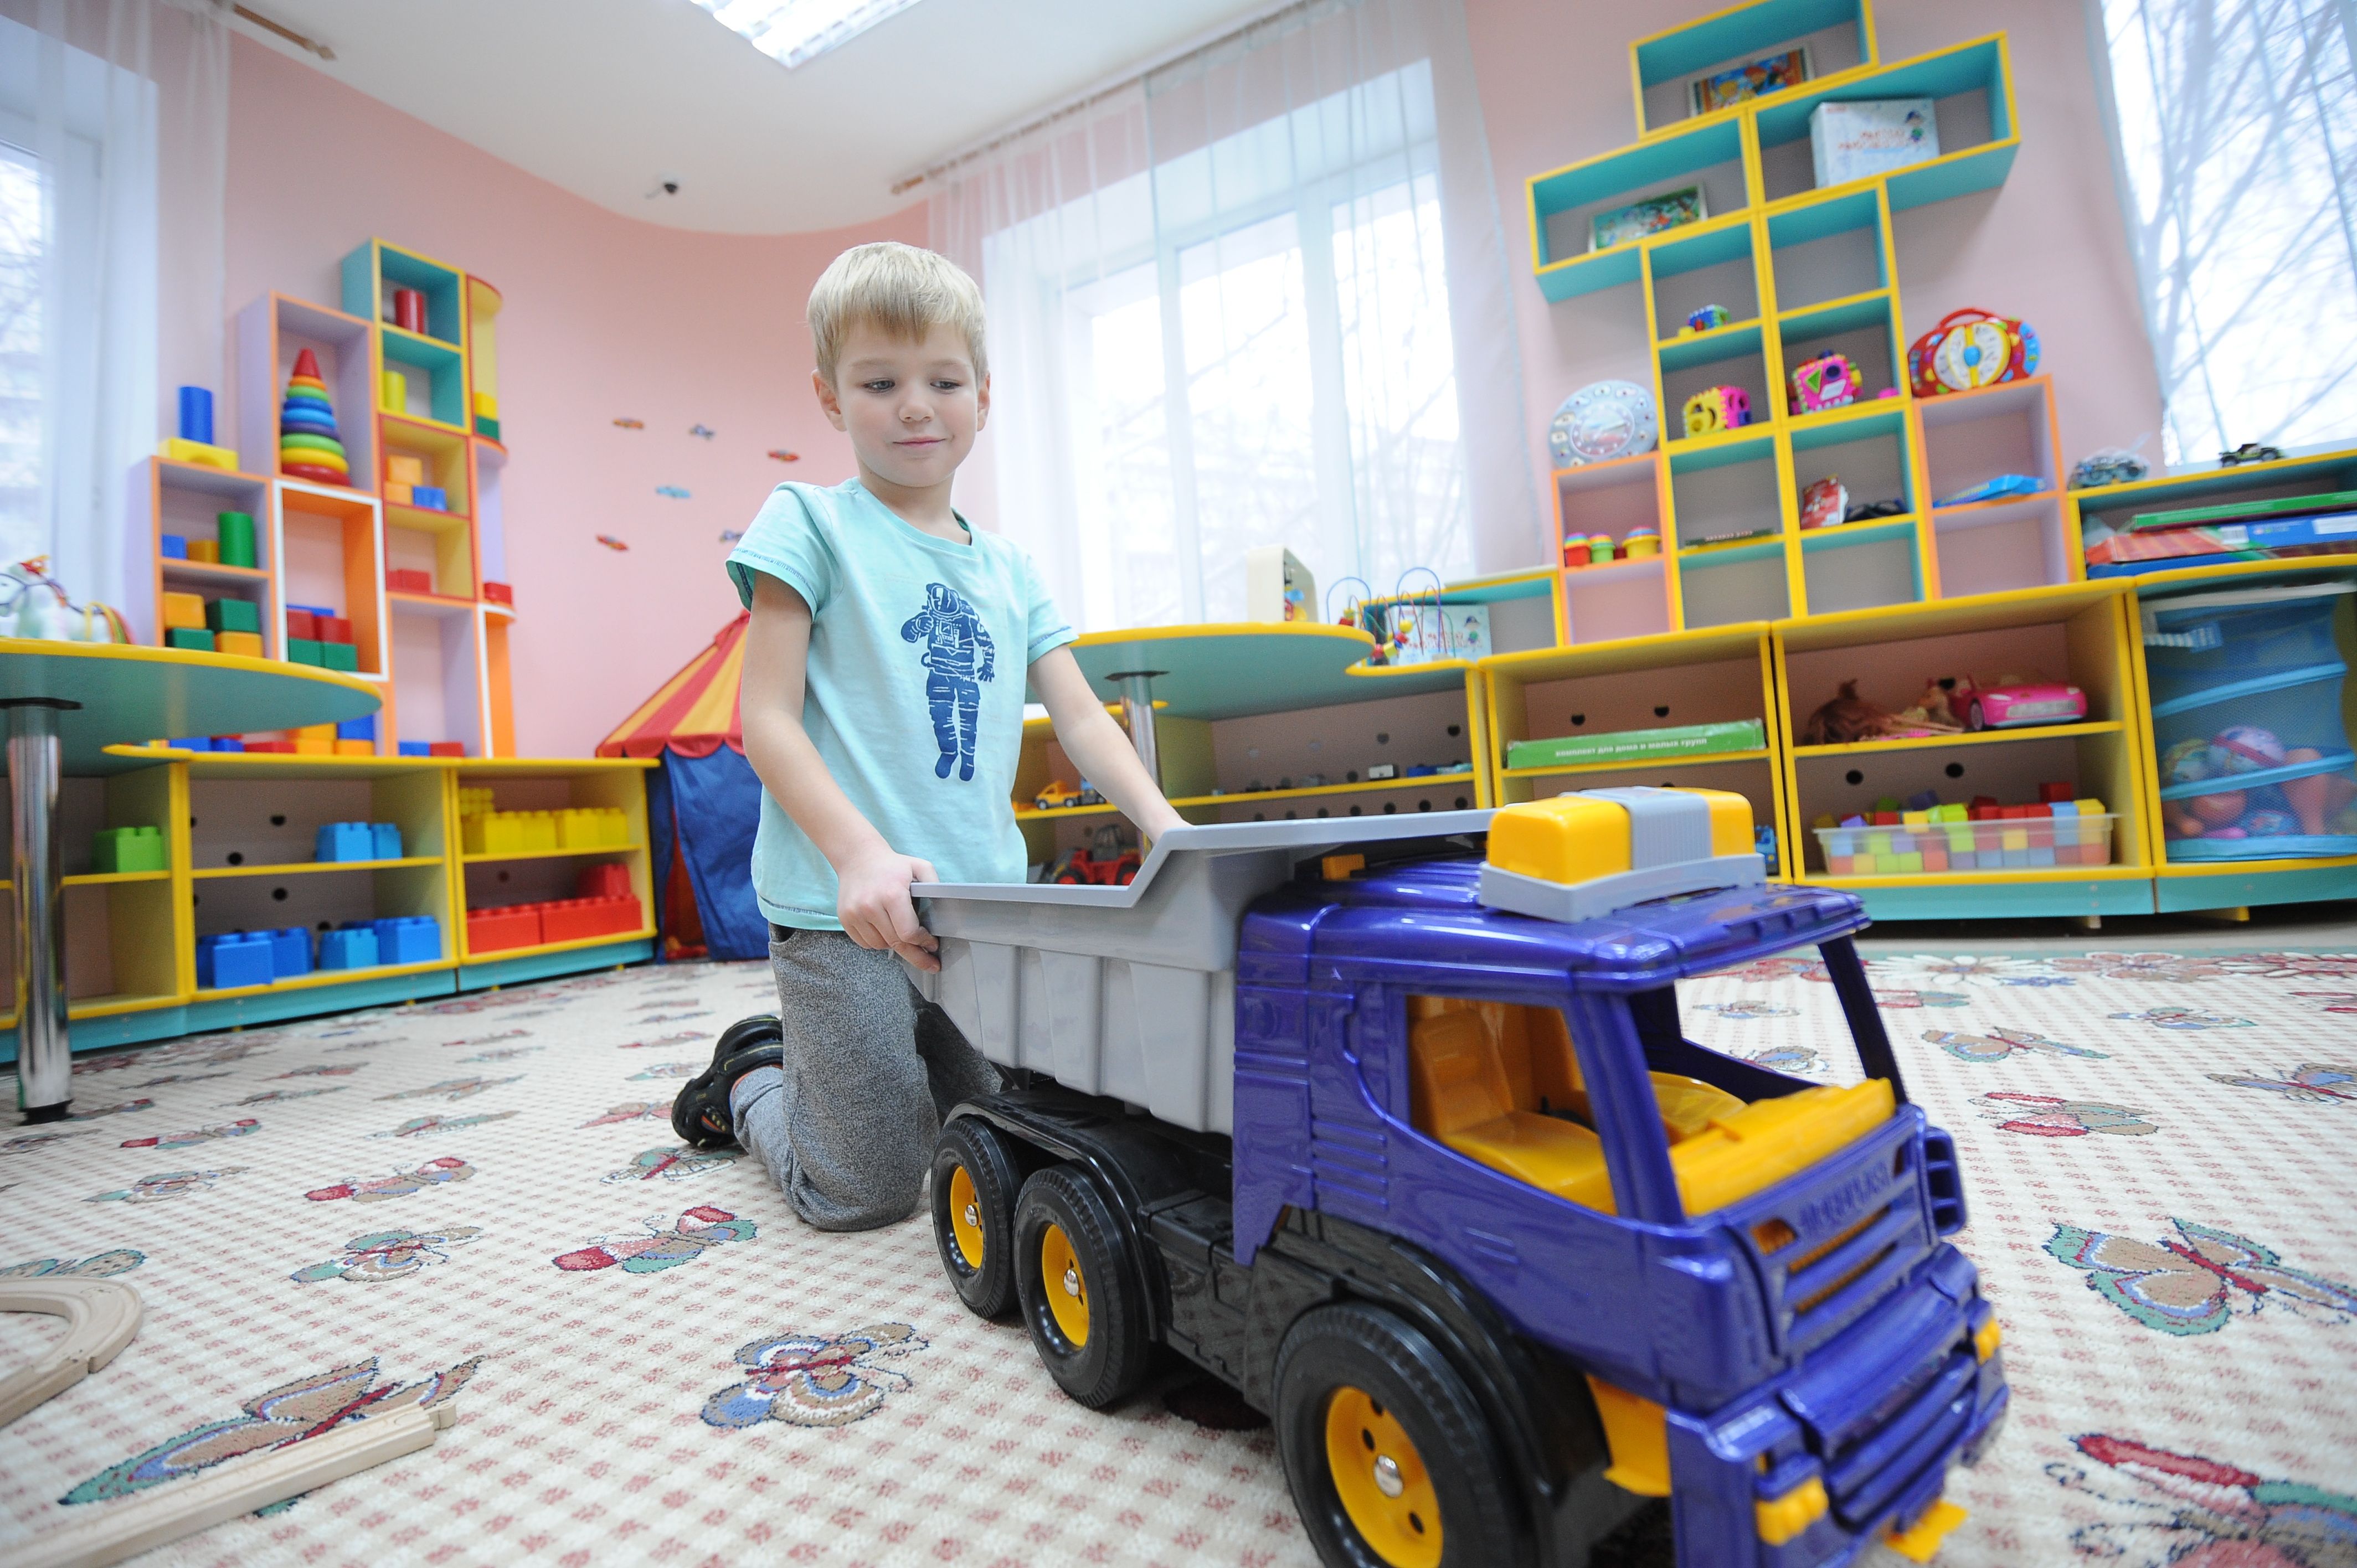 Детский сад в бело-оранжевых цветах построят в Московском